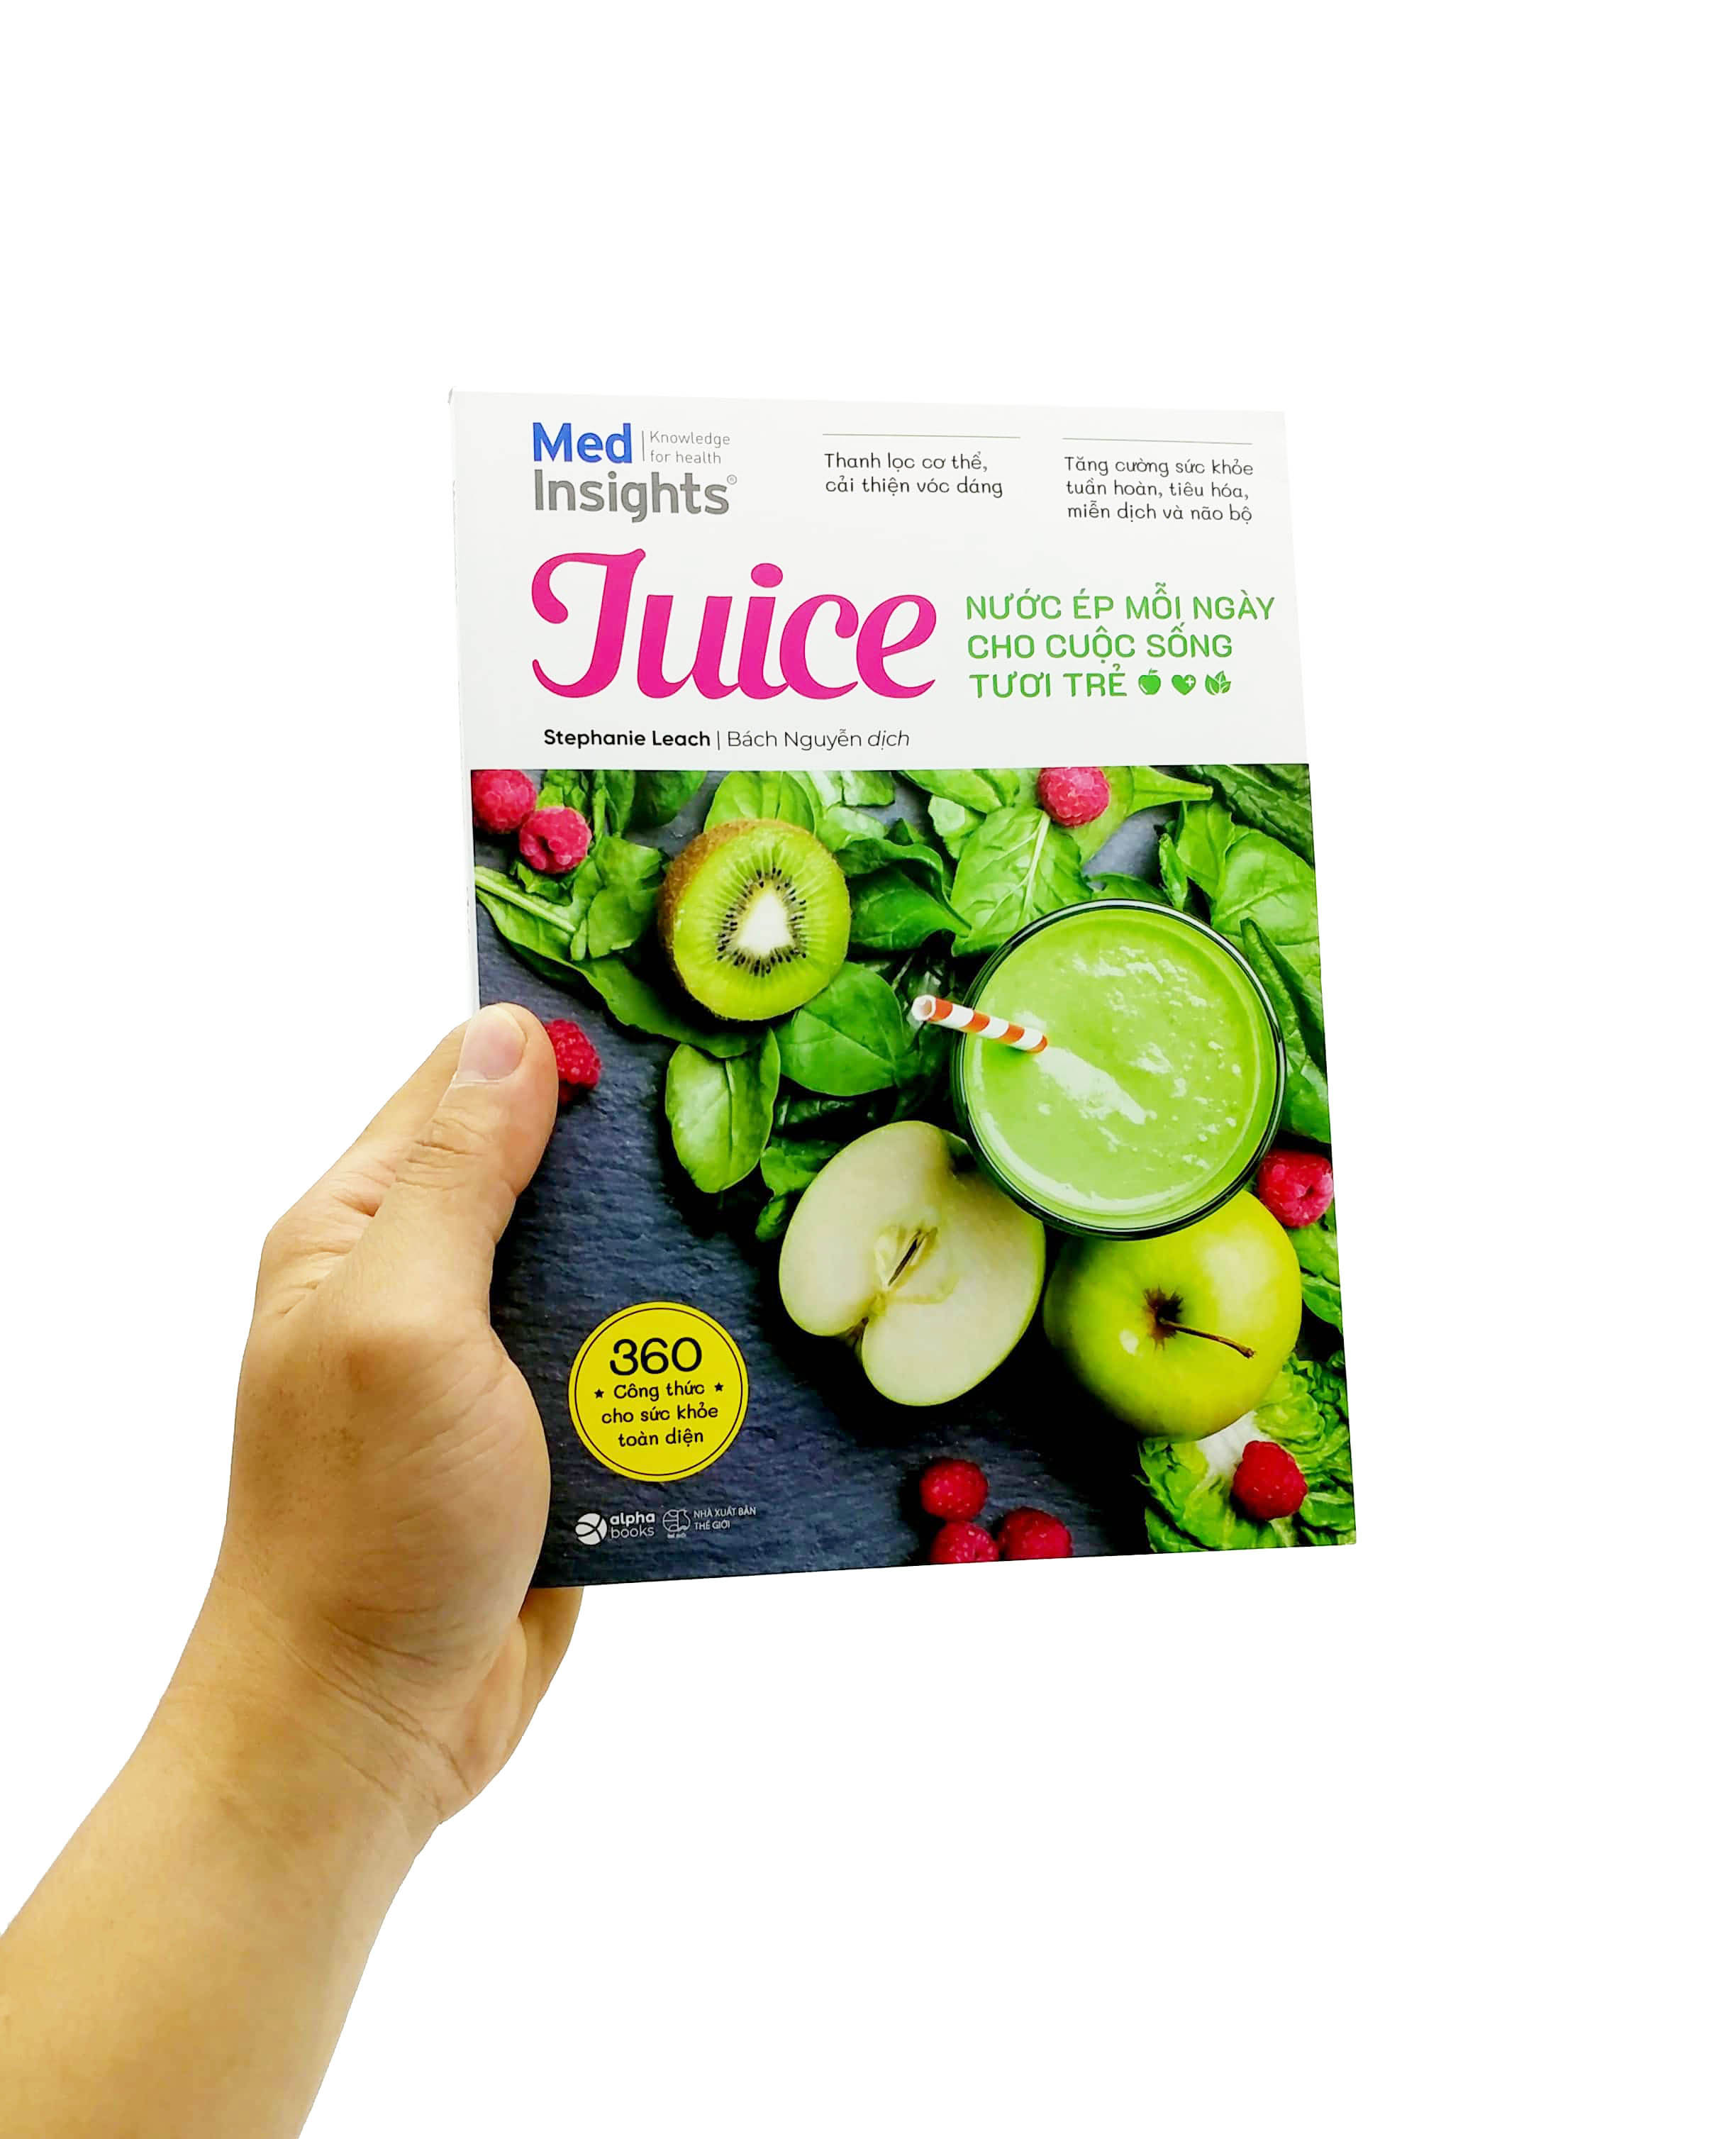 Juice - Nước Ép Mỗi Ngày Cho Cuộc Sống Tươi Trẻ PDF